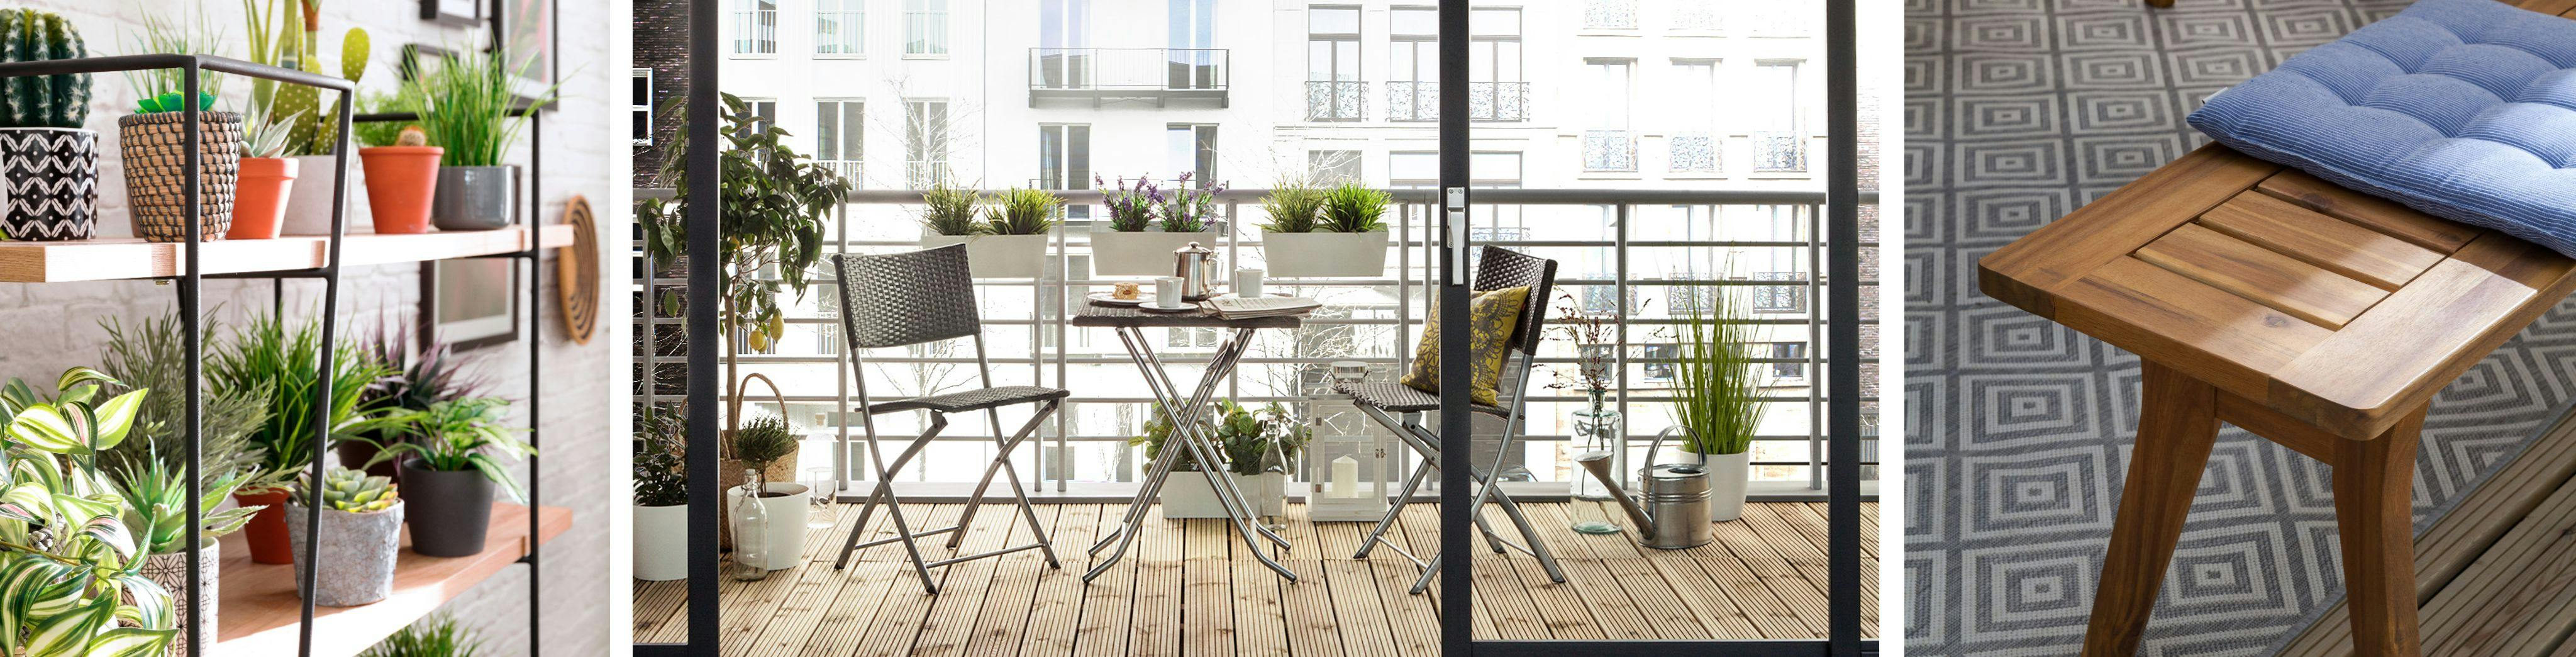 Plantes sur étagères murales extérieures, table et chaises sur un balcon